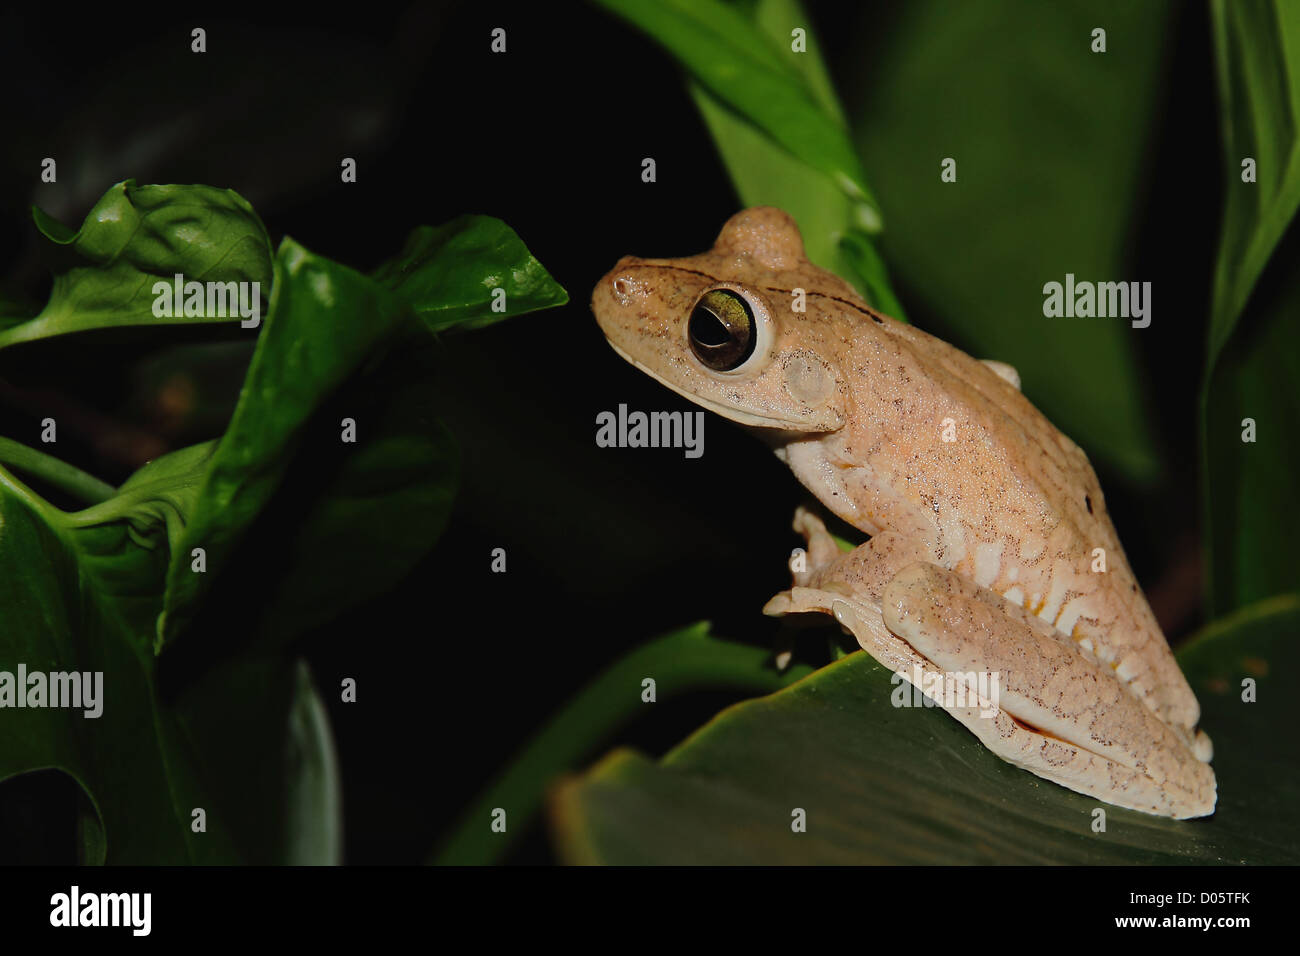 Cierre lateral de un Gladiator Tree Frog (Hypsiboas rosenbergi) sentada sobre una hoja en la noche en Manuel Antonio, Costa Rica. Foto de stock